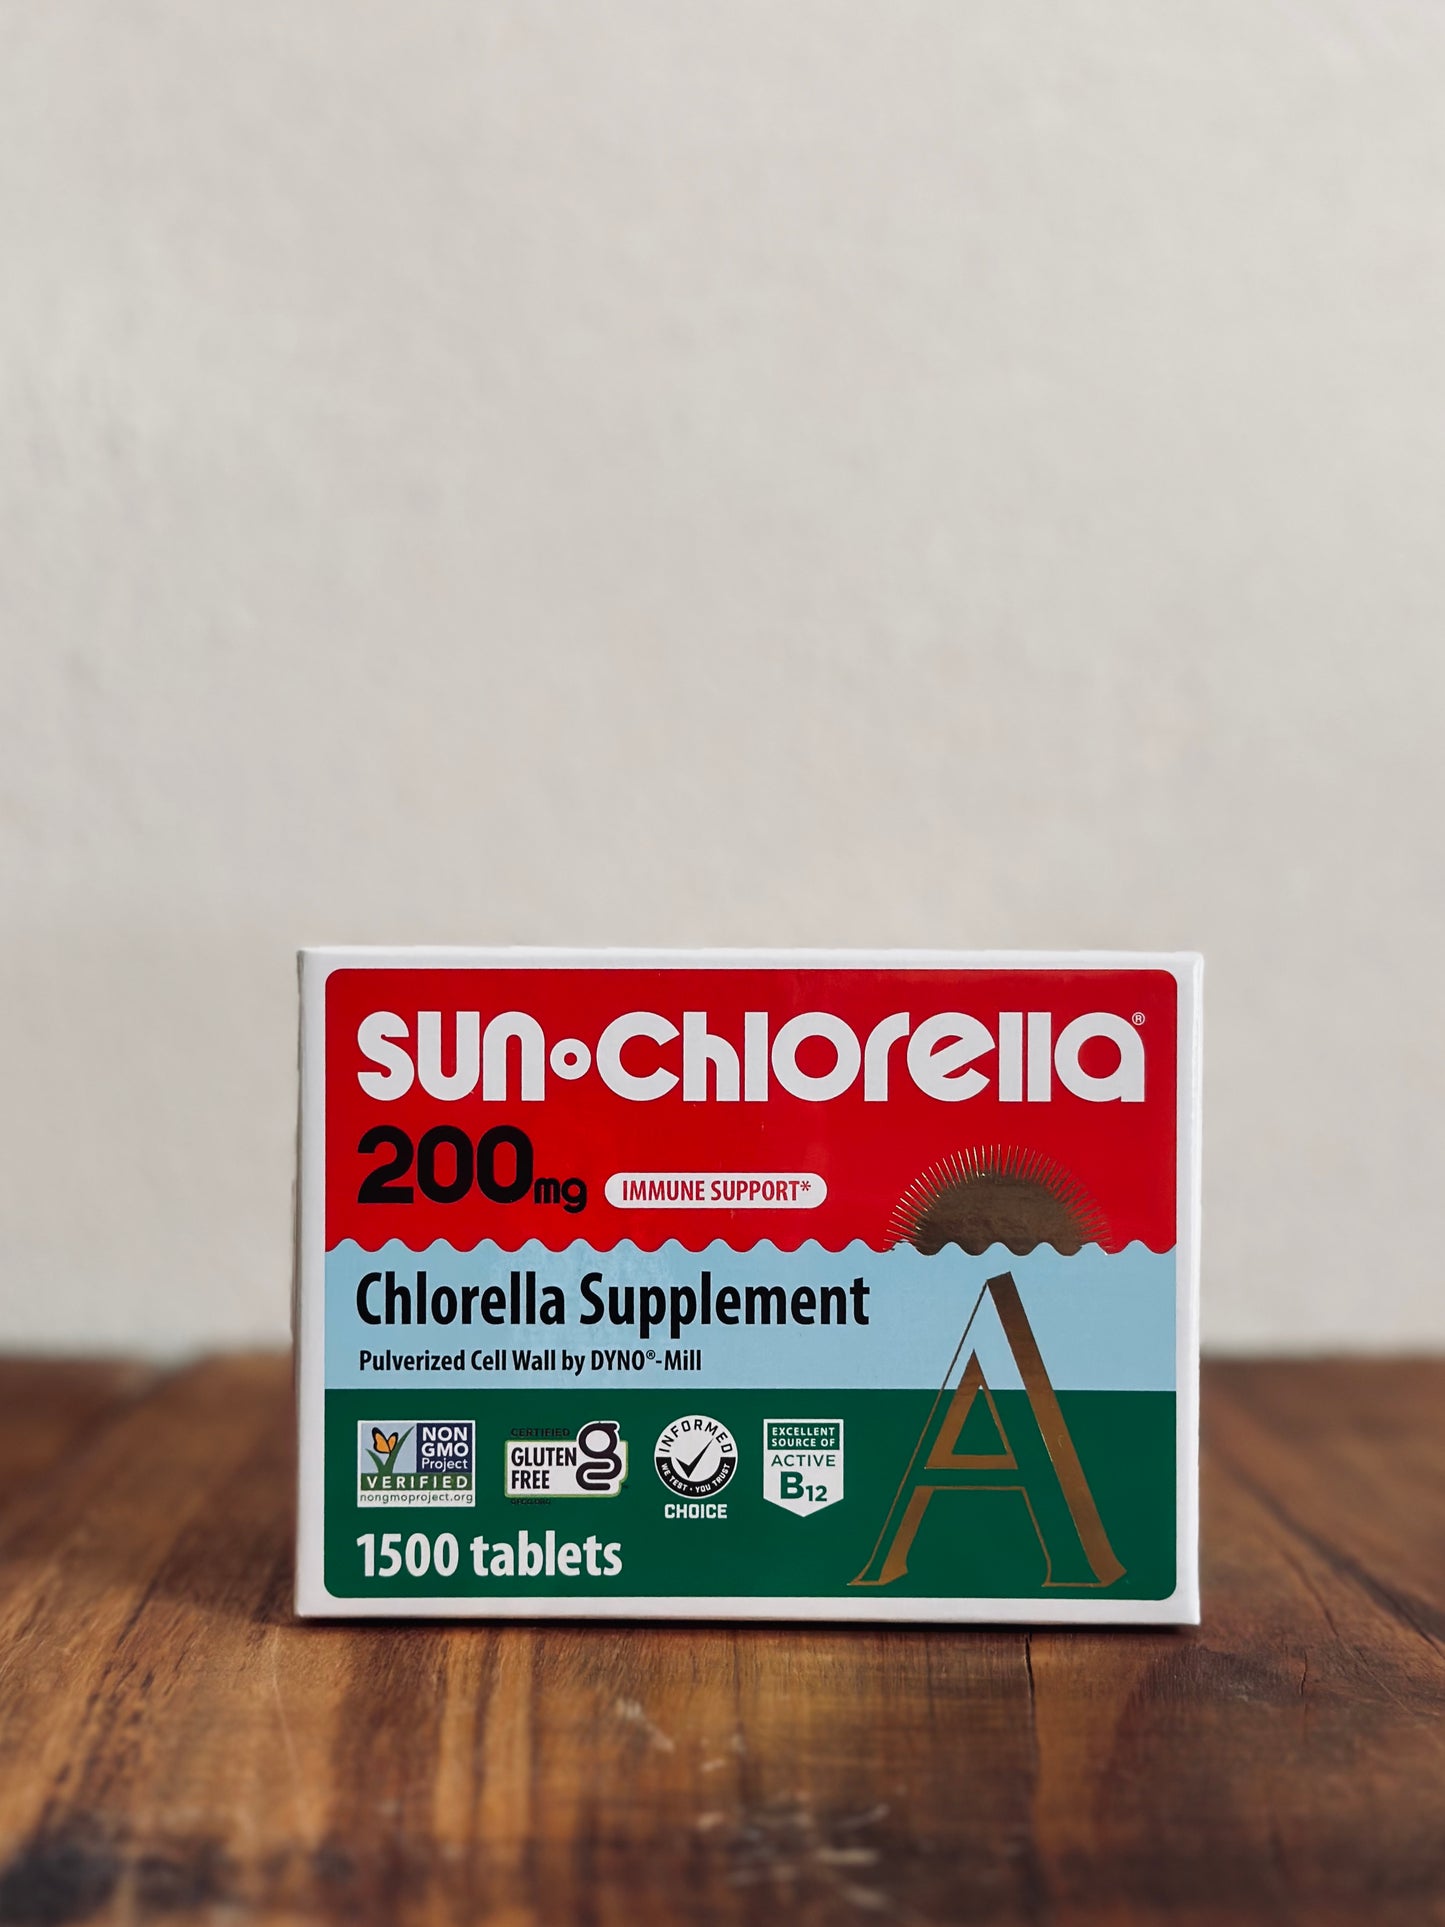 Chlorella, Sun Chlorella